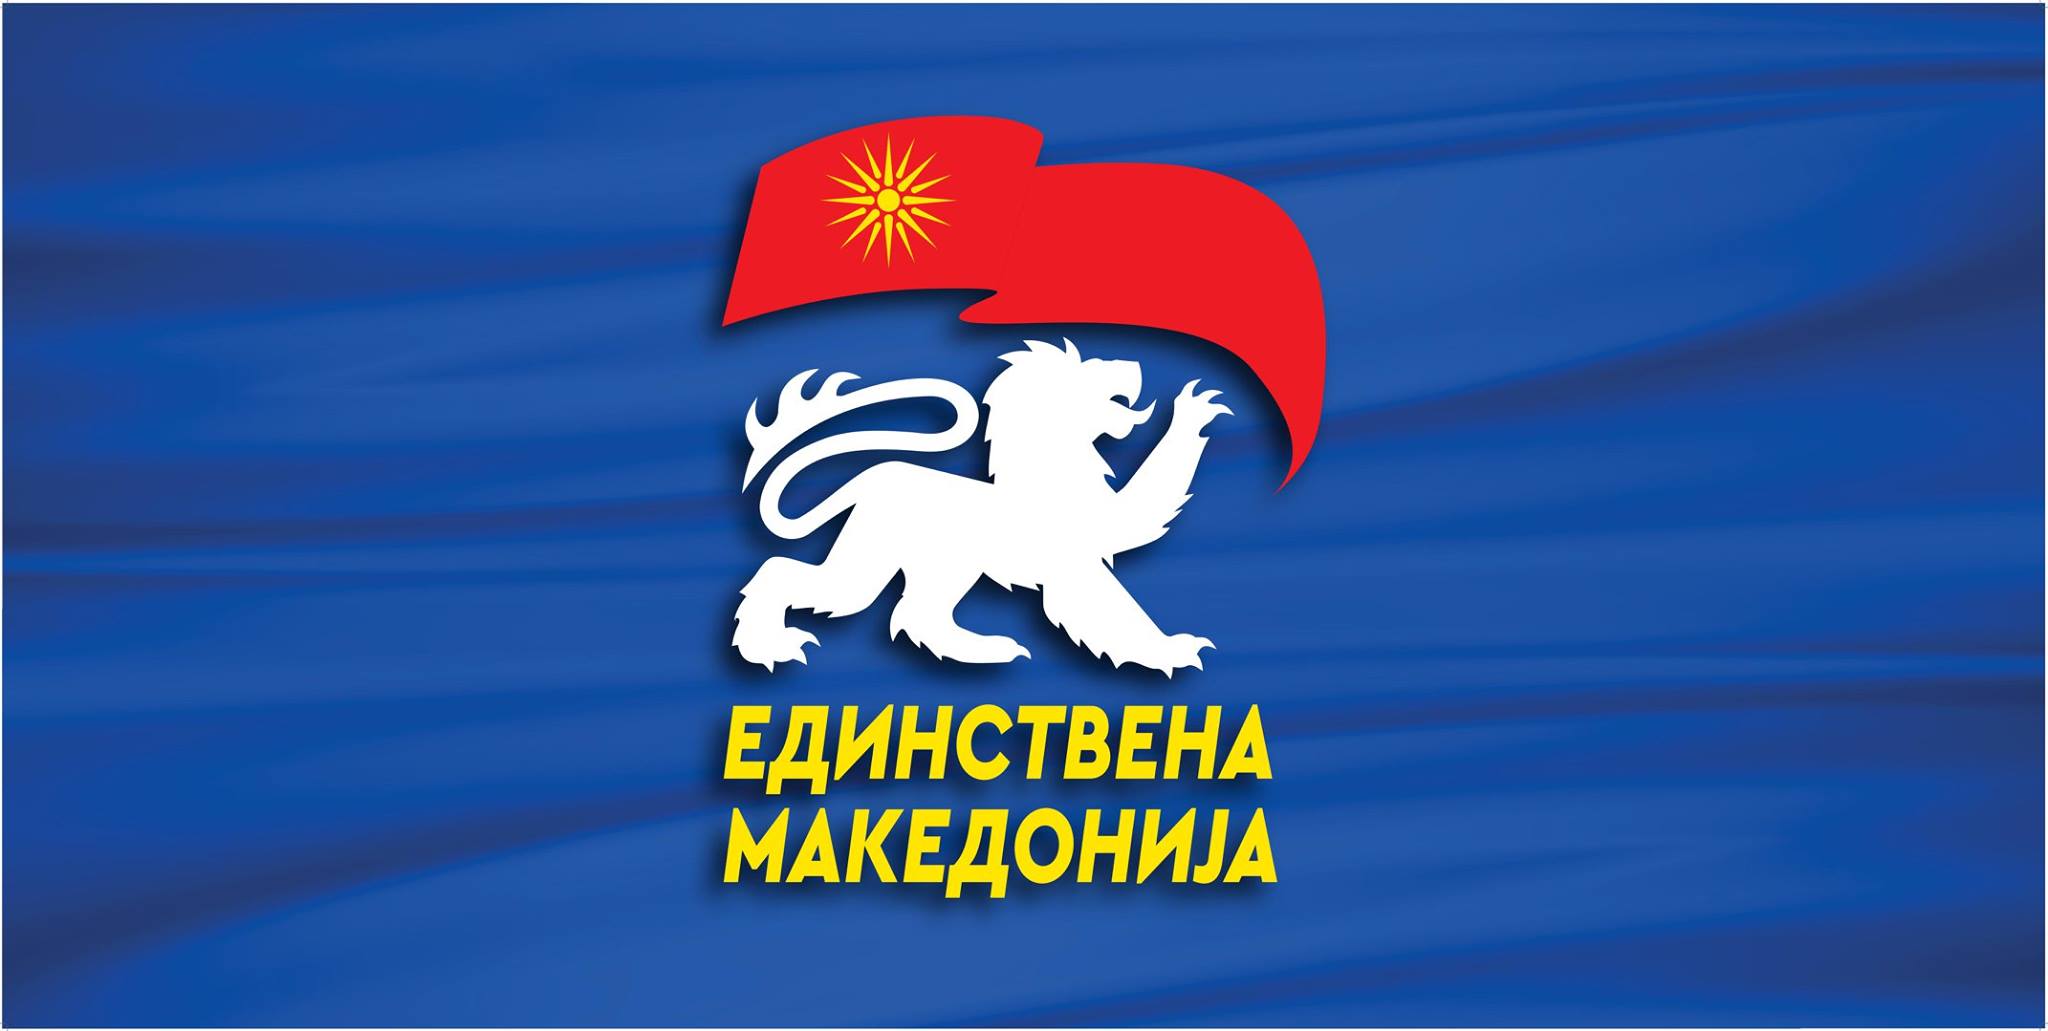 Единствена Македонија: Власта да каже со име и презиме кој и од каде 30 години зема странски пари - од Русија или од Сорос и ЦИА